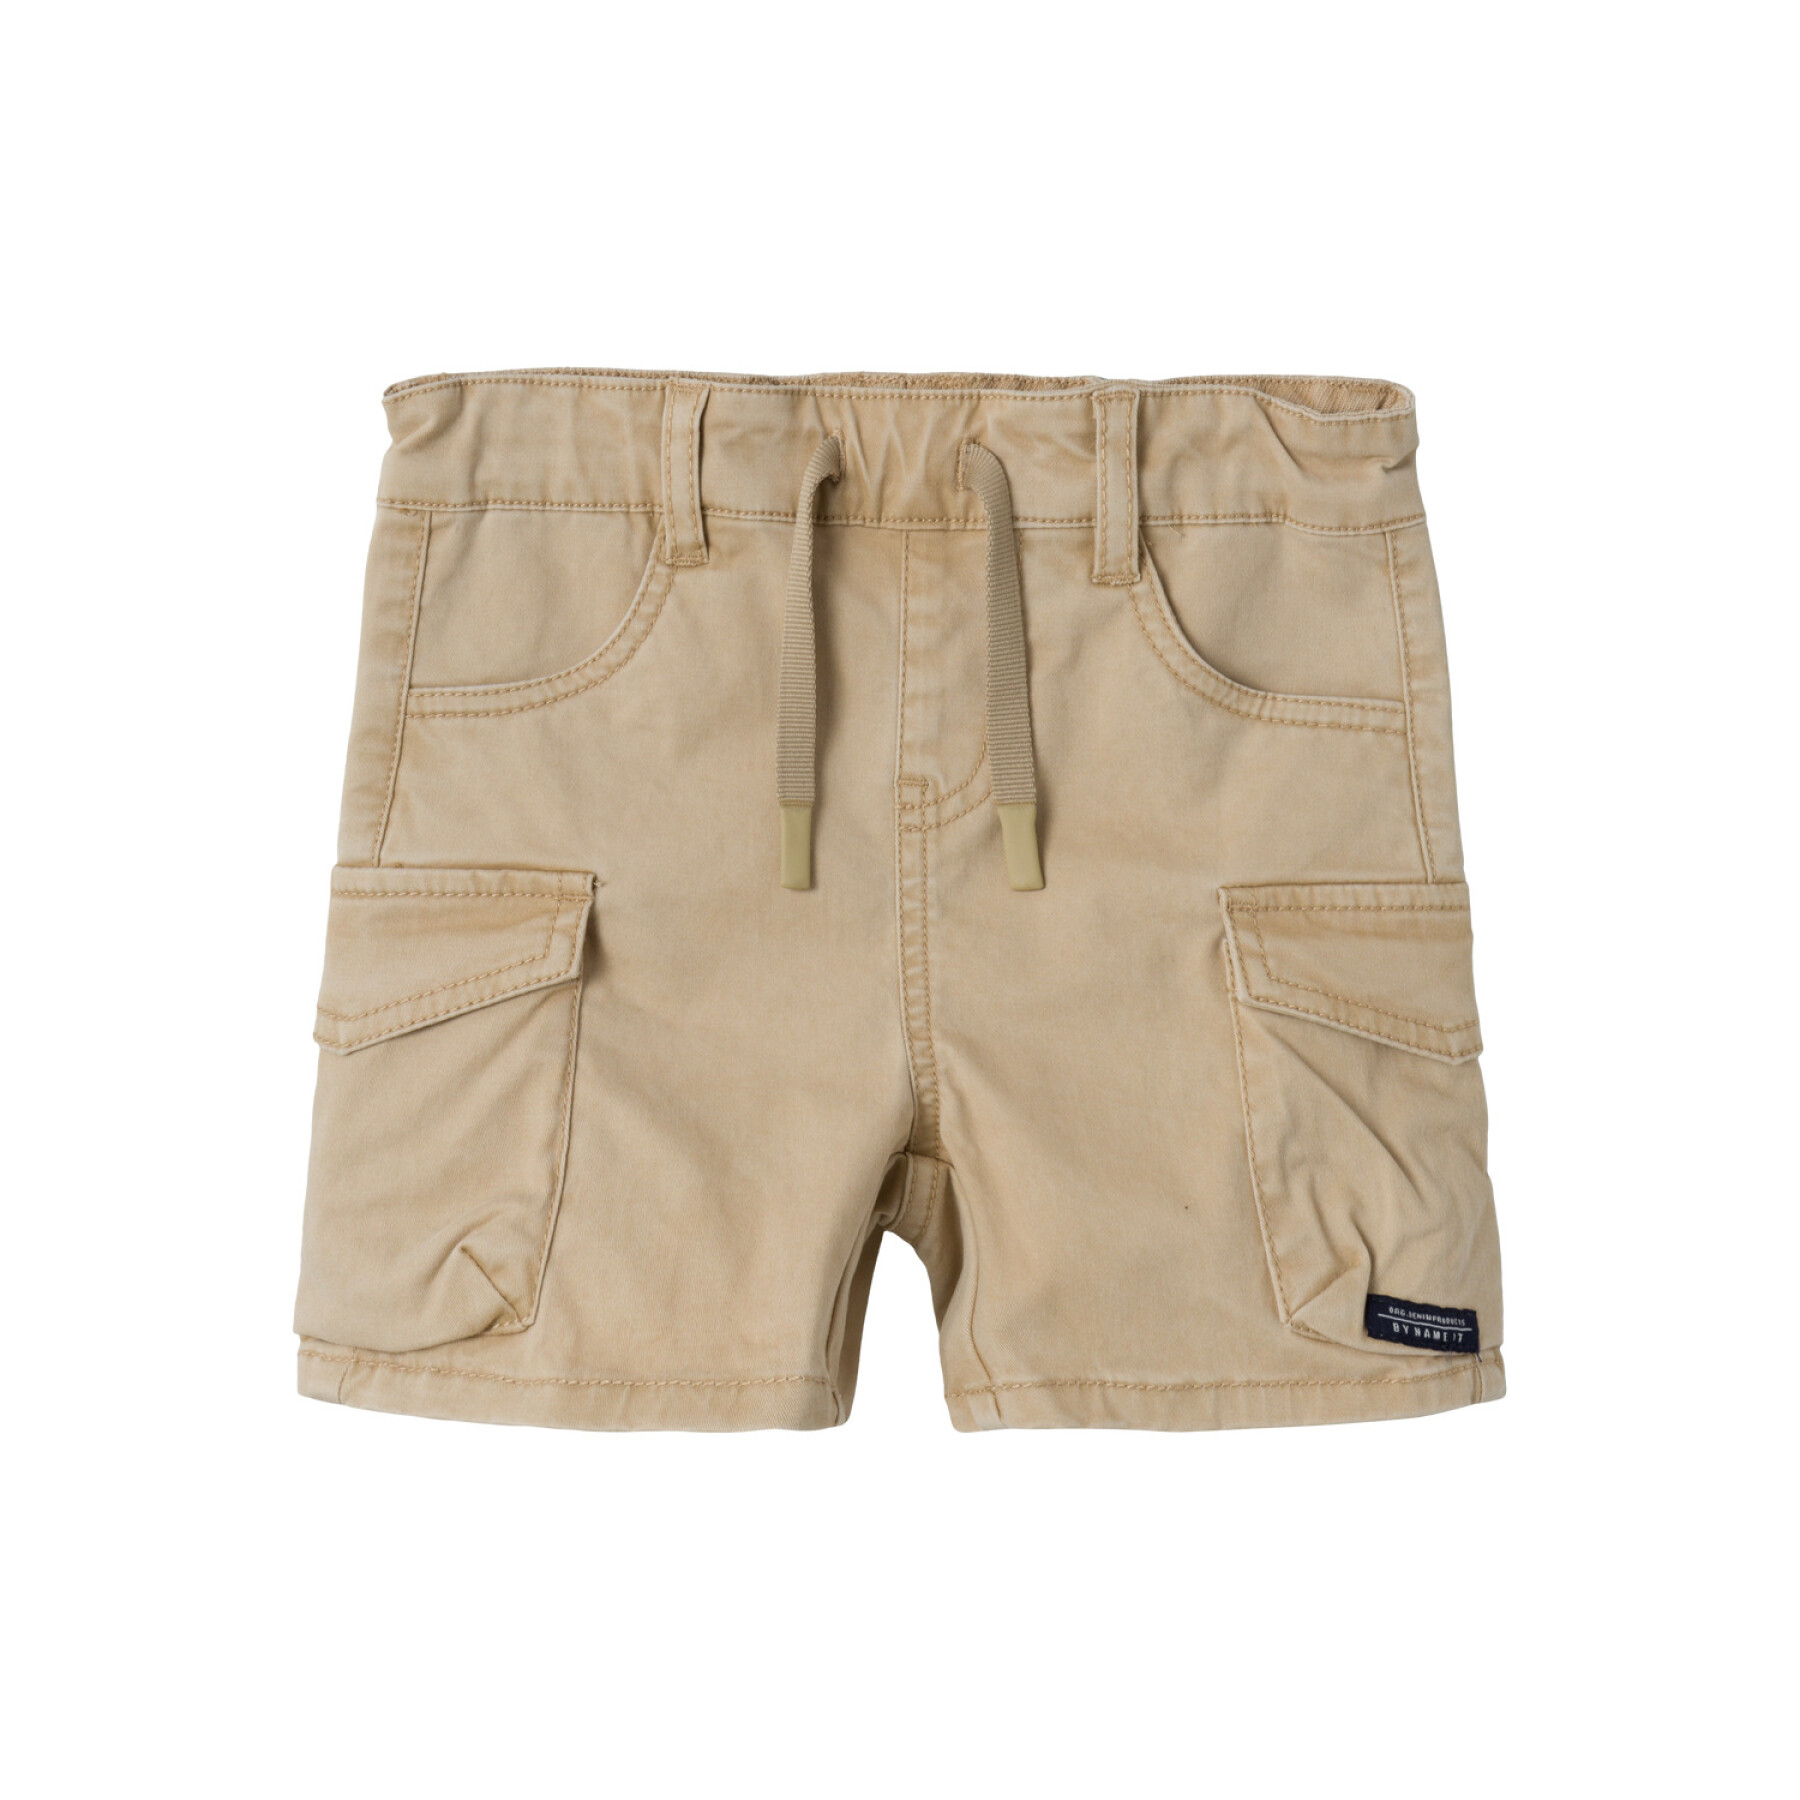 Children's cargo shorts Name it Ben 1771-HI